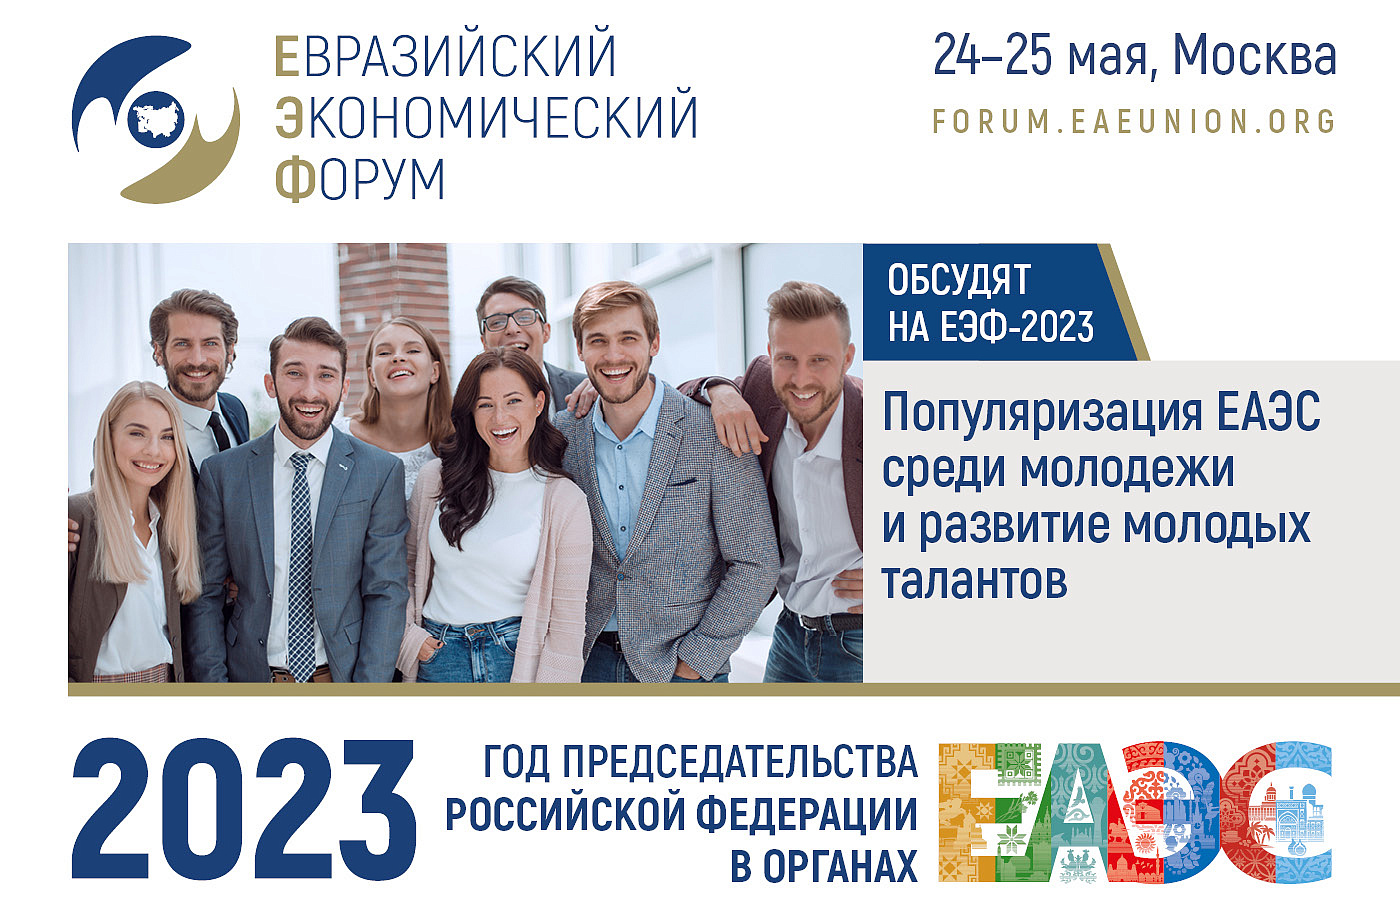 Популяризацию ЕАЭС среди молодежи обсудят на II Евразийском экономическом форуме 